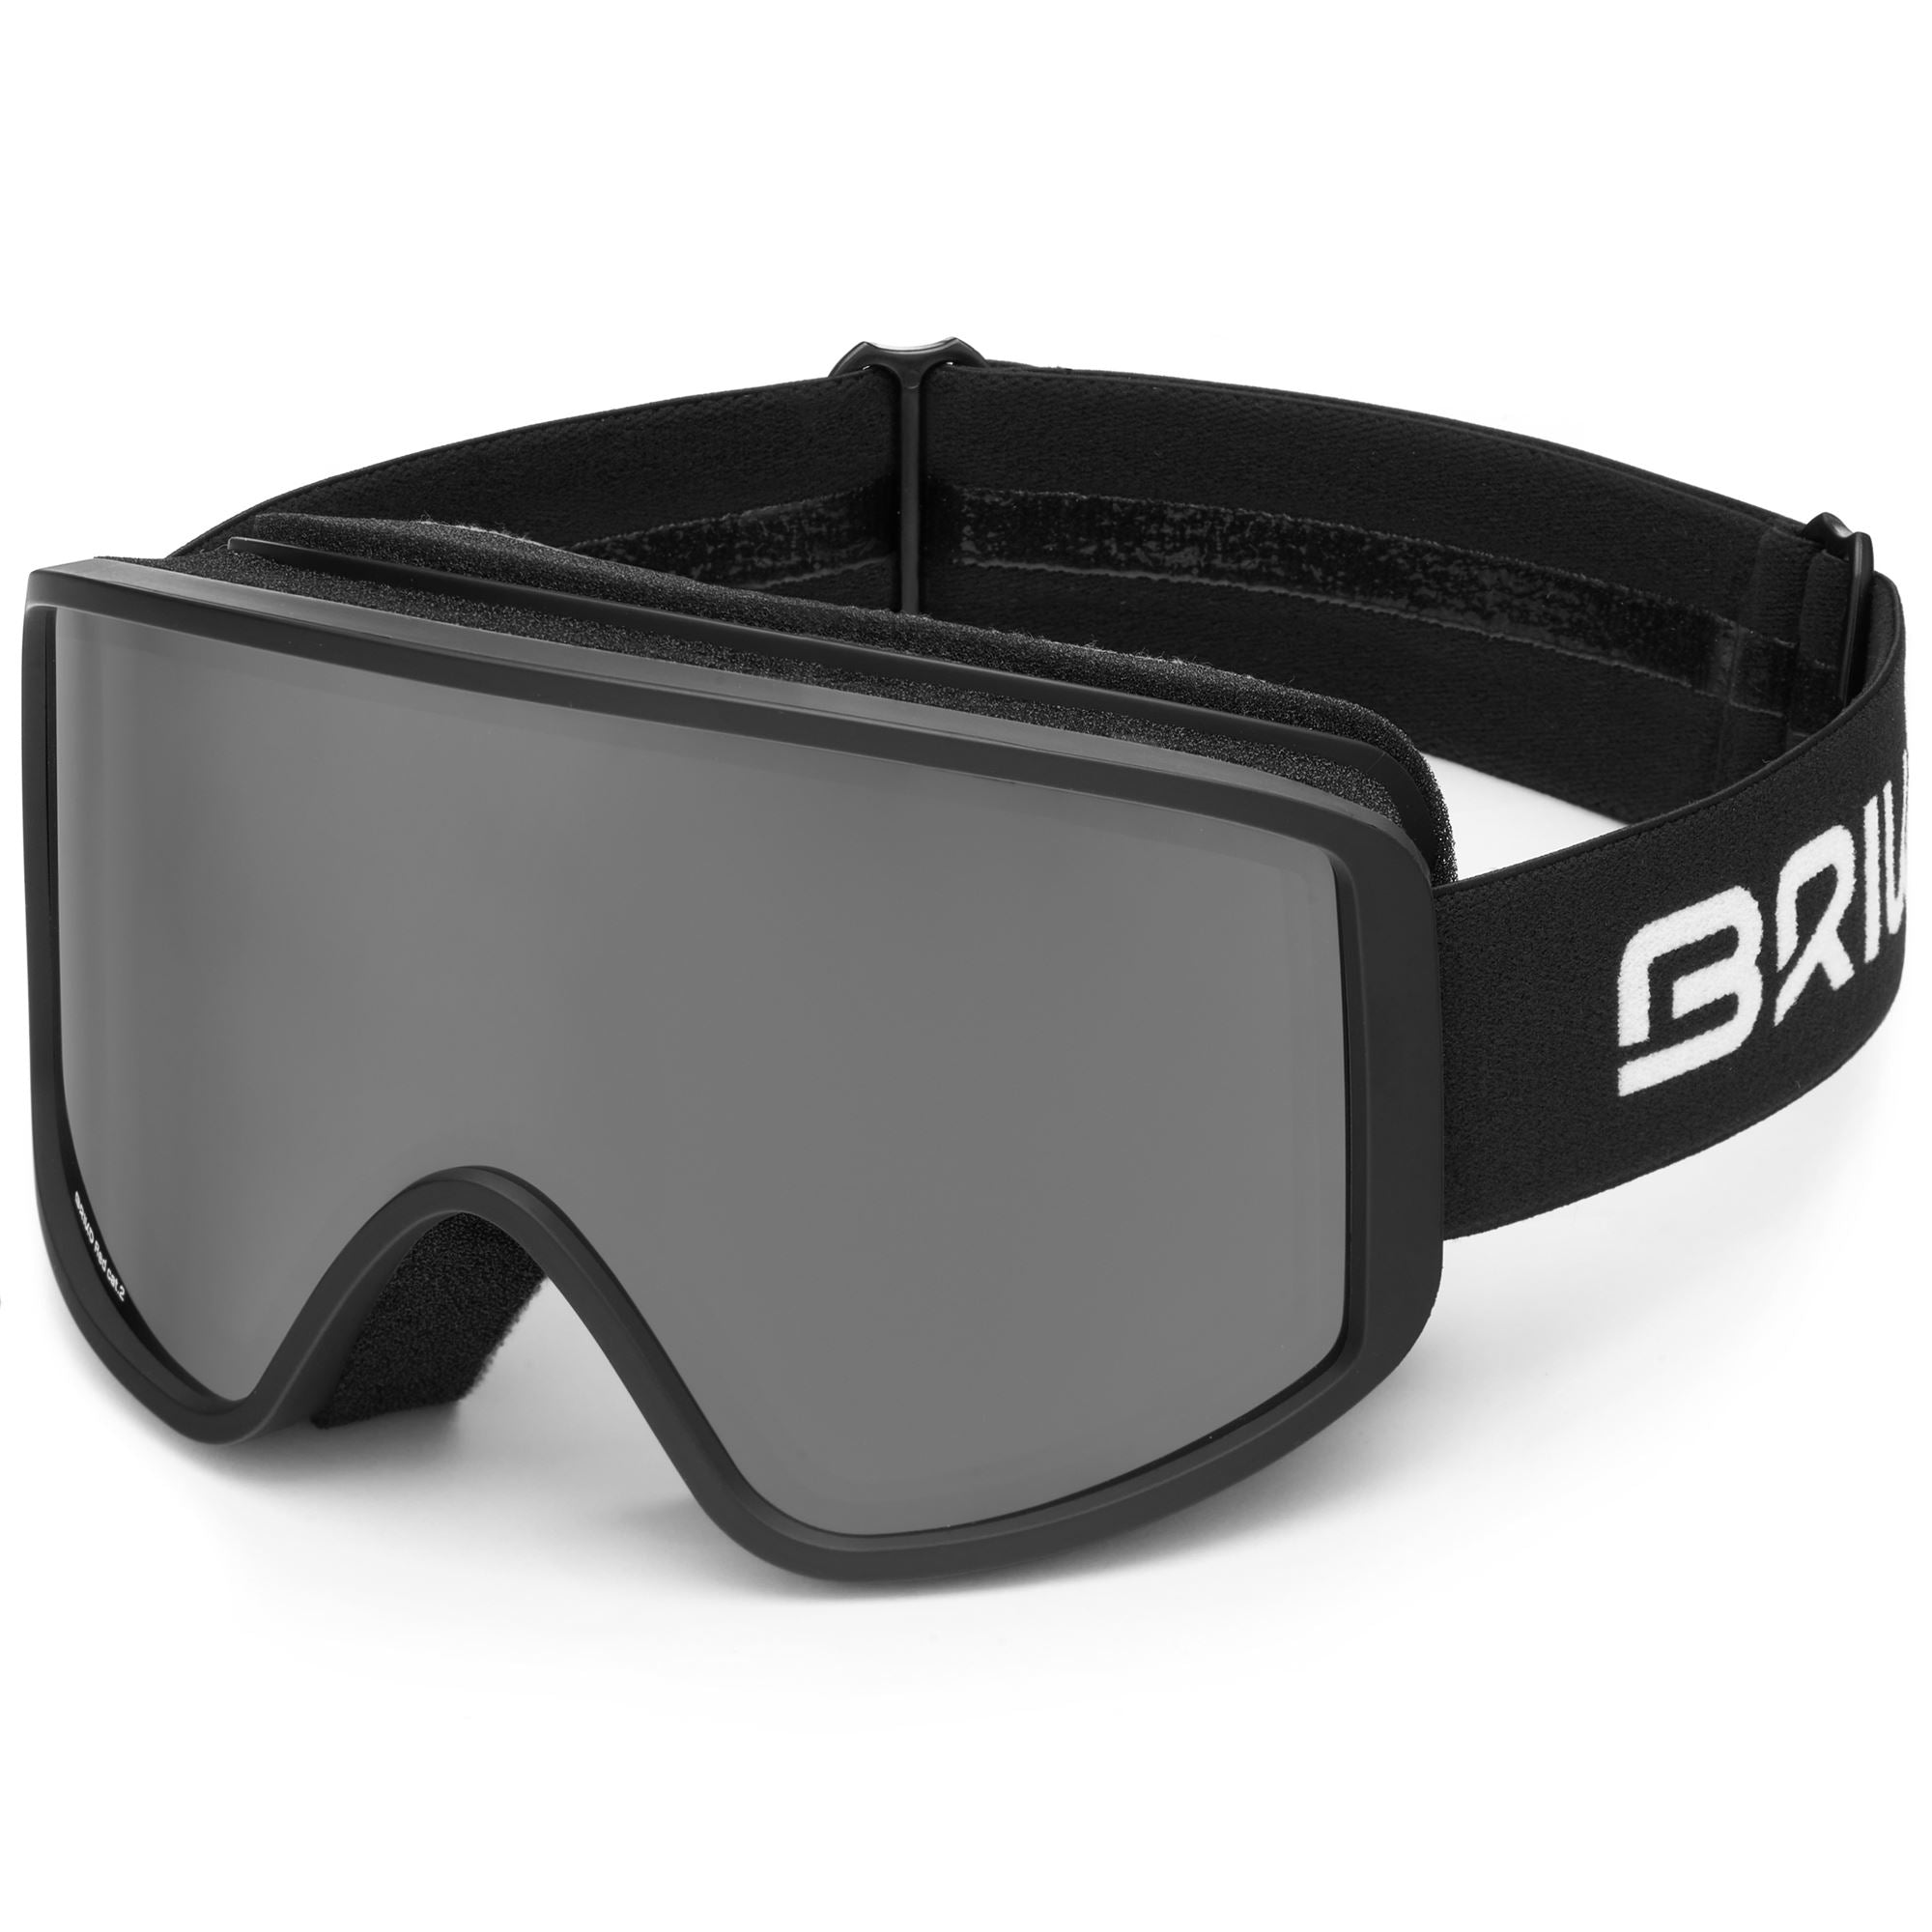 Goggles Unisex HOMER Ski MATT -